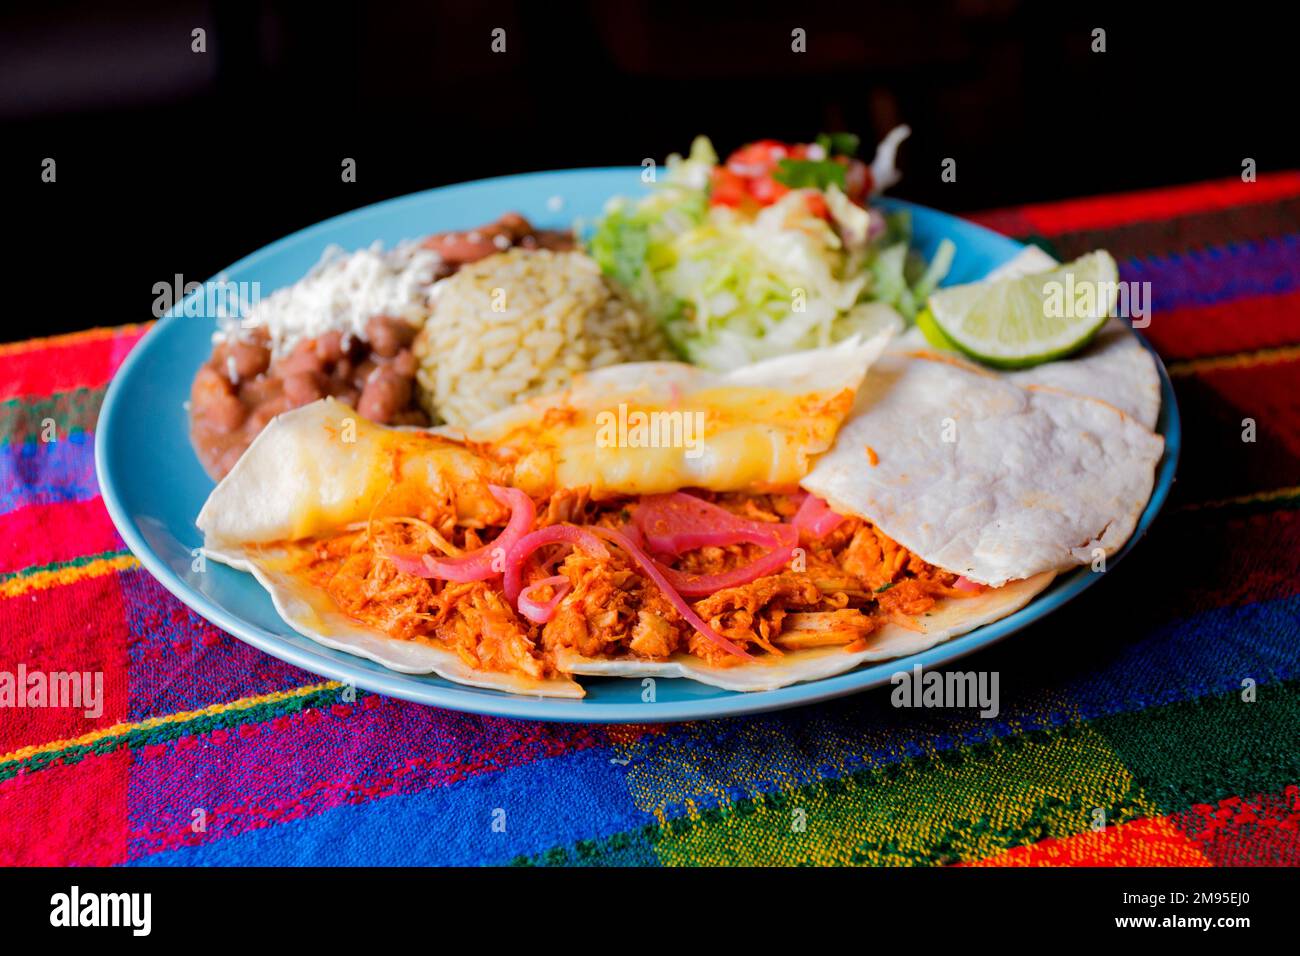 Die Fajita ist eines der traditionellsten und beliebtesten Gerichte der Tex-Mex-Küche. Es besteht aus Fleisch, das auf dem Grill geröstet und in Streifen geschnitten wird Stockfoto